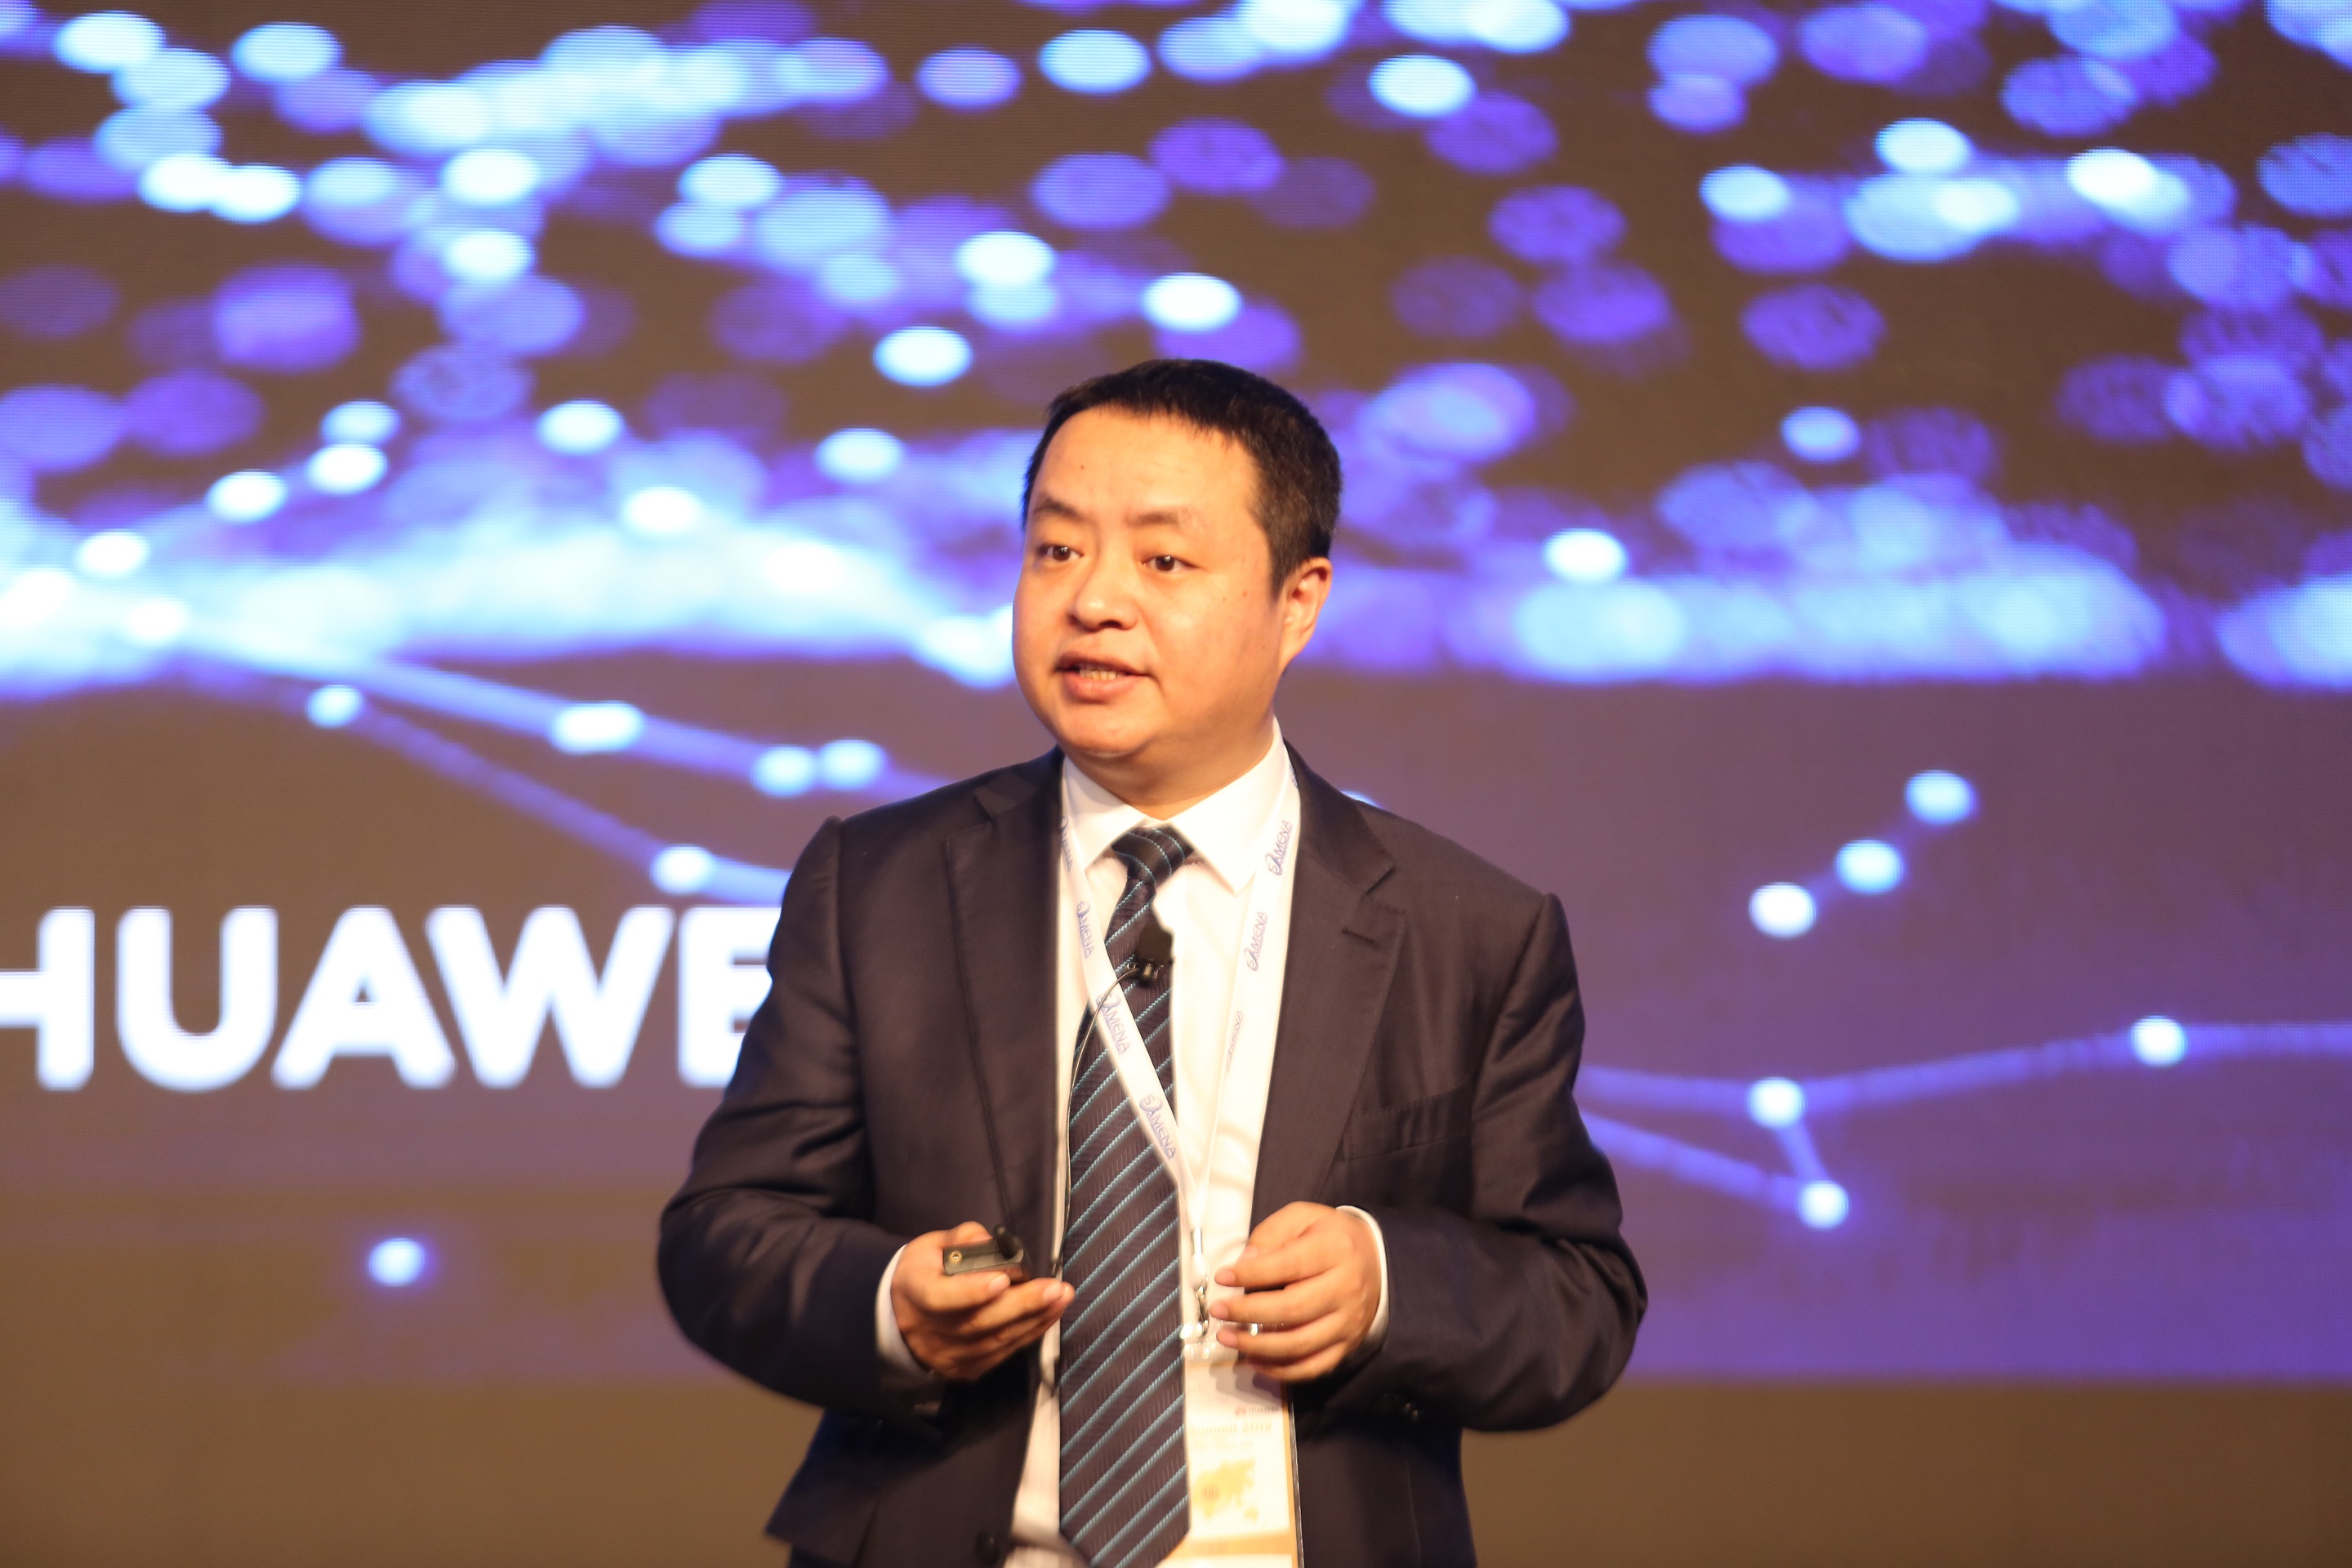 وانغ سو، نائب رئيس مجموعة أعمال هواوي كارير لشبكات الاتصالات في الشرق الأوسط